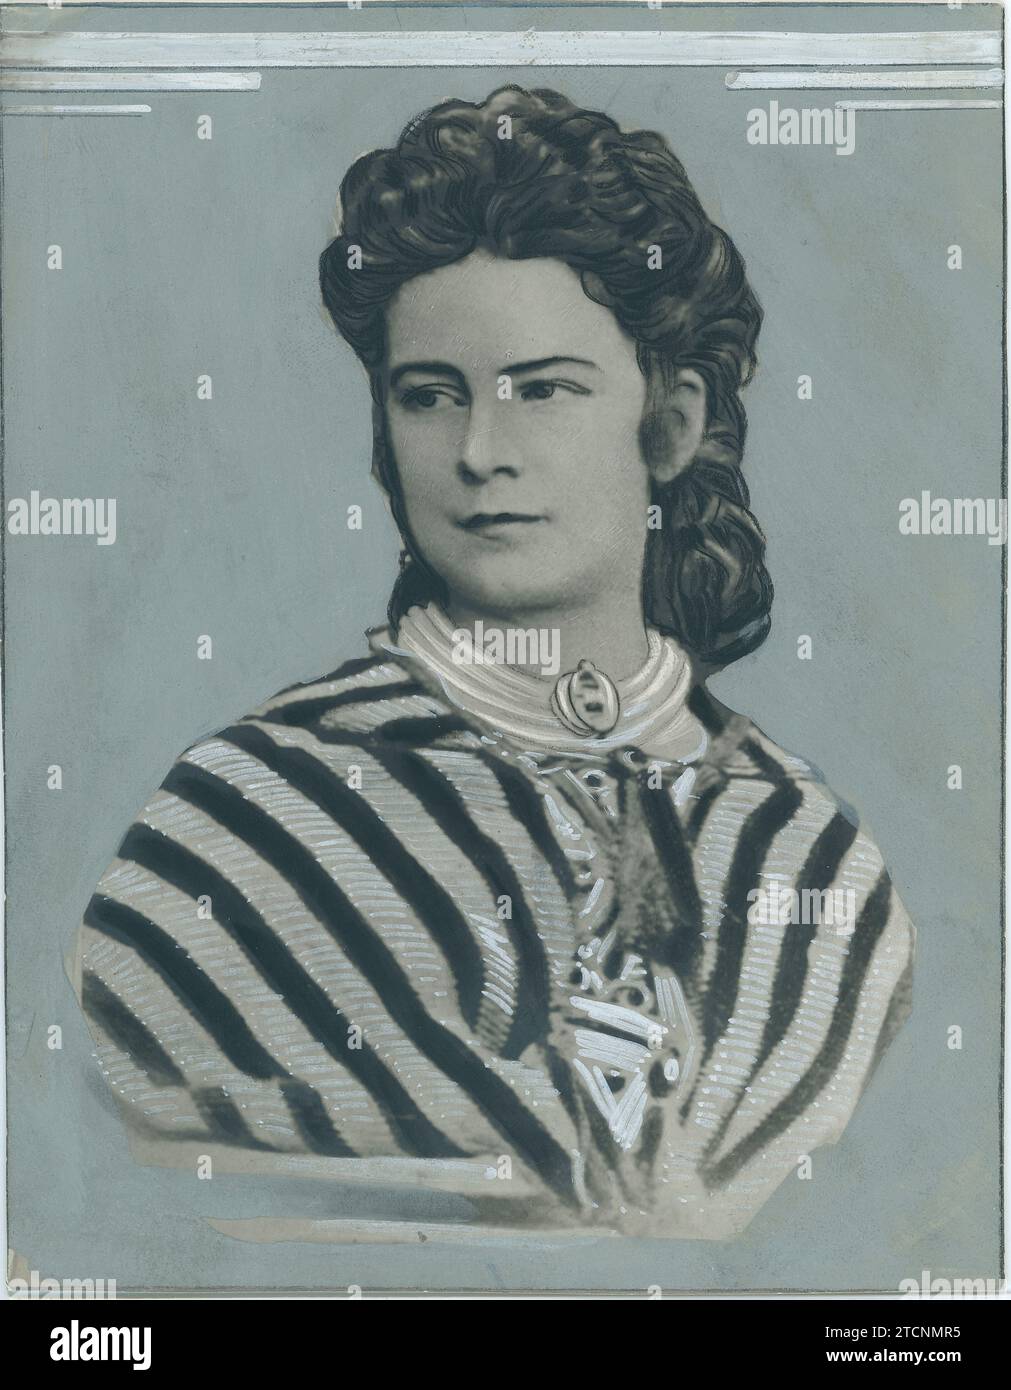 01/01/1870. Empress Elizabeth of Austria 'Sissi'. Credit: Album / Archivo ABC Stock Photo